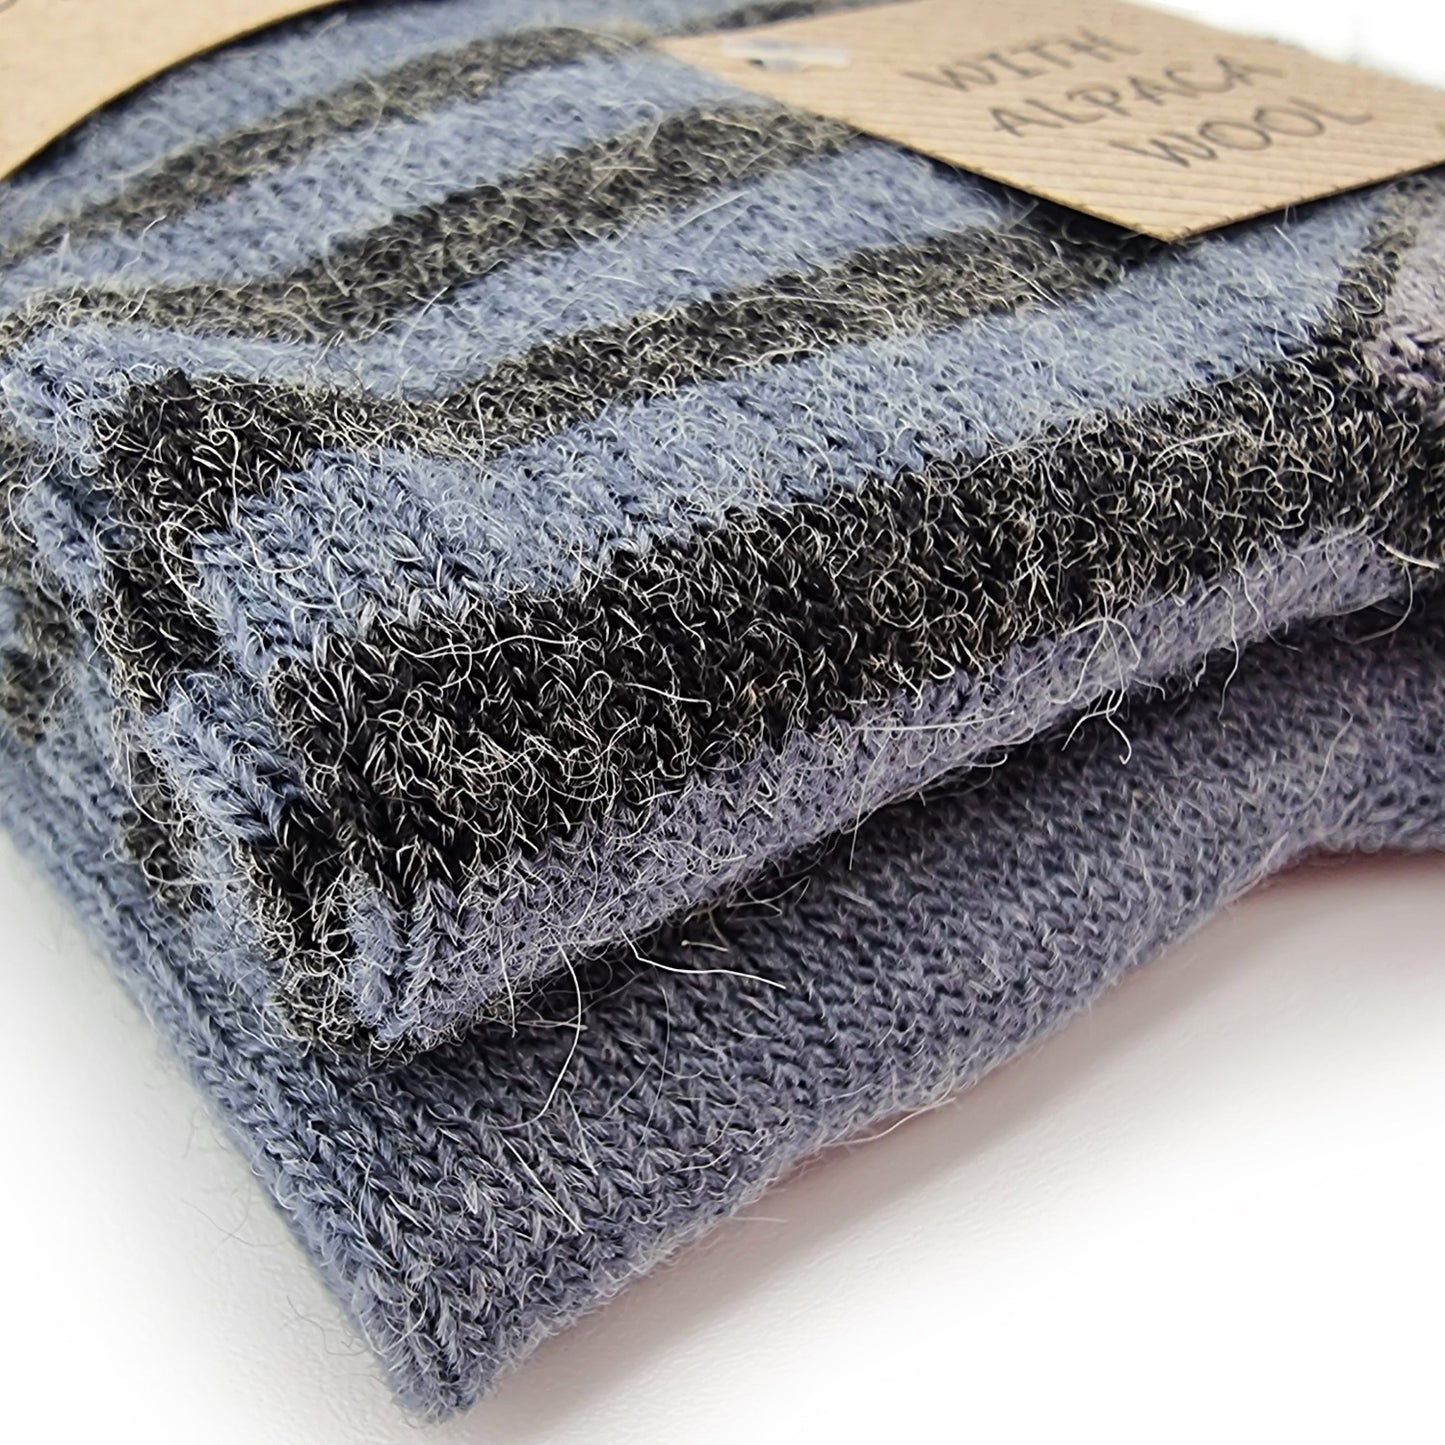 Chaussettes rayées en laine d'alpaga, 2 paires (bleu foncé)